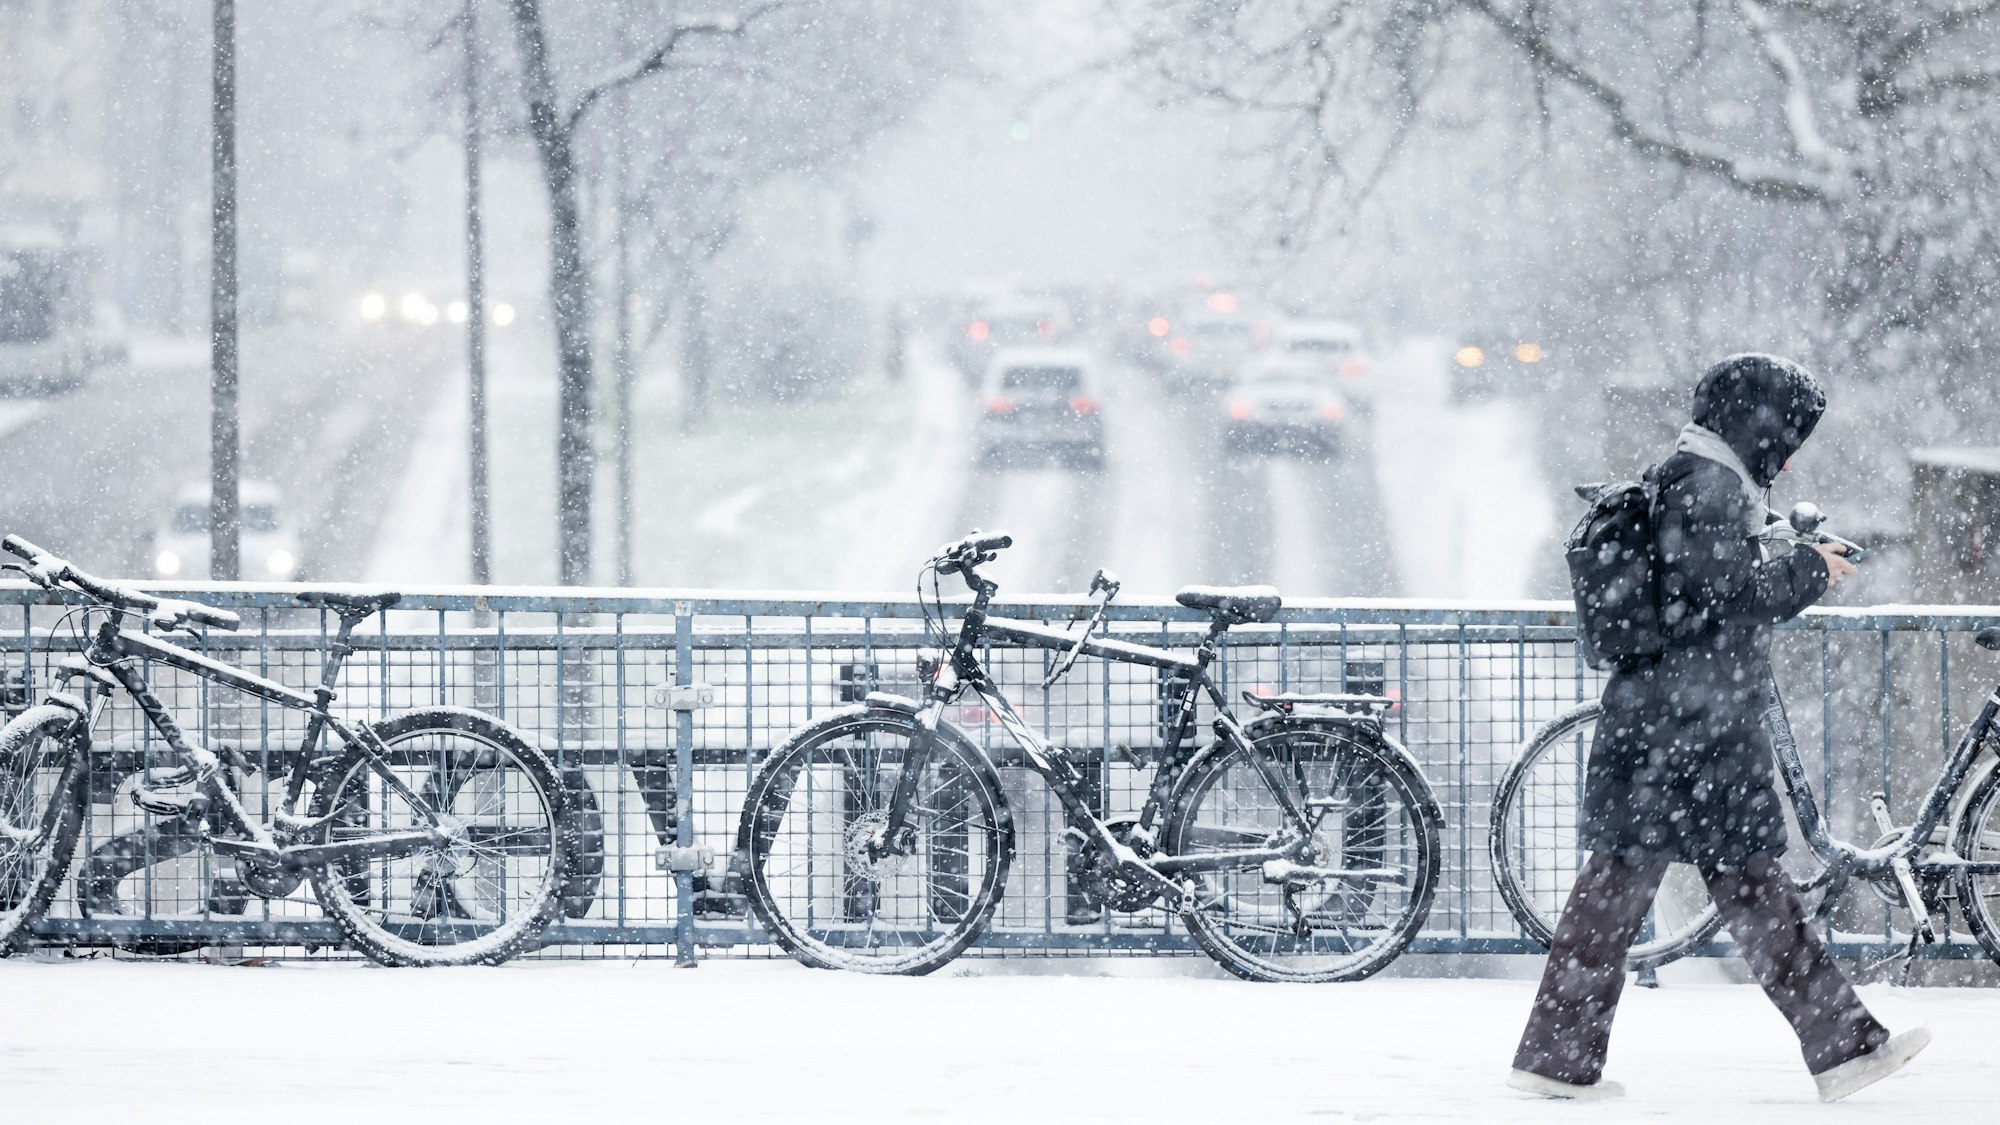 Schneebedeckte Fahrräder stehen im dichten Schneetreiben auf der Brücke an der Universitätsstraße.